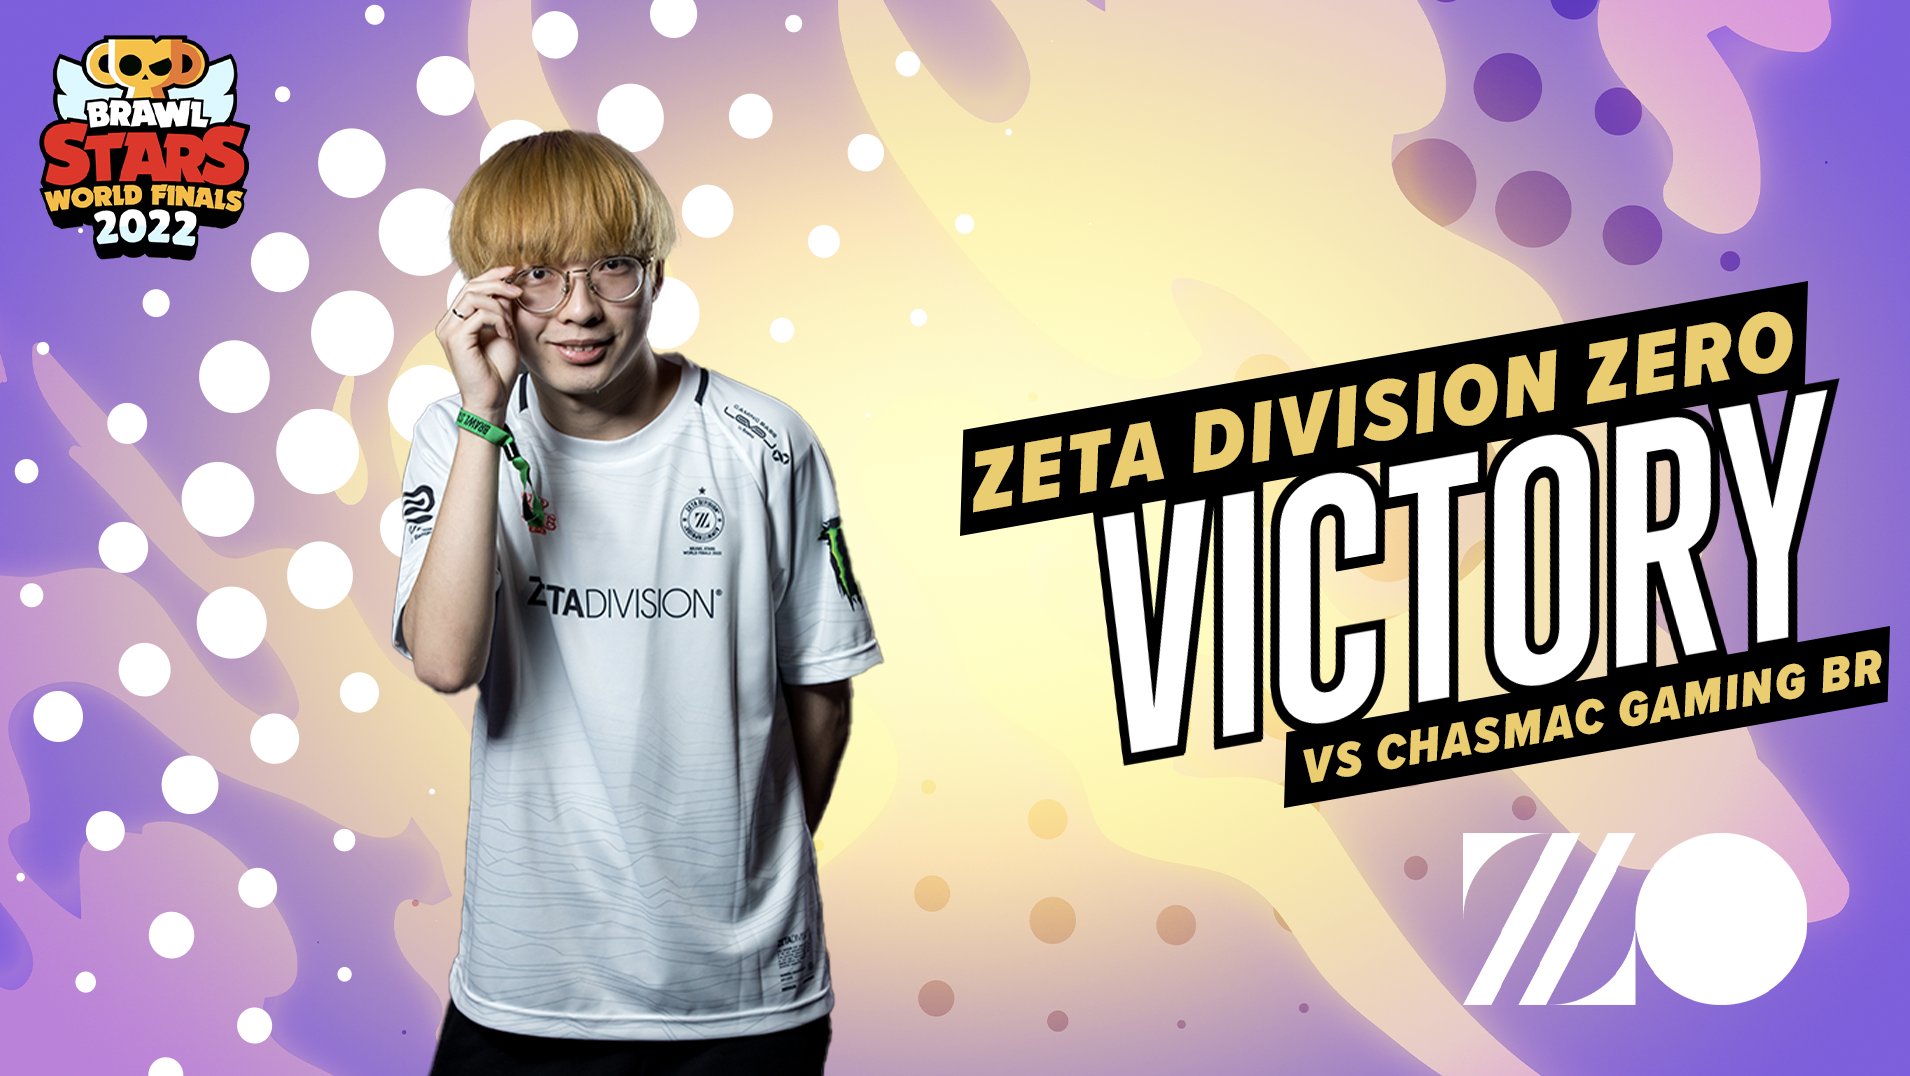 Zeta Division Zero win Brawl Stars World Finals 2022